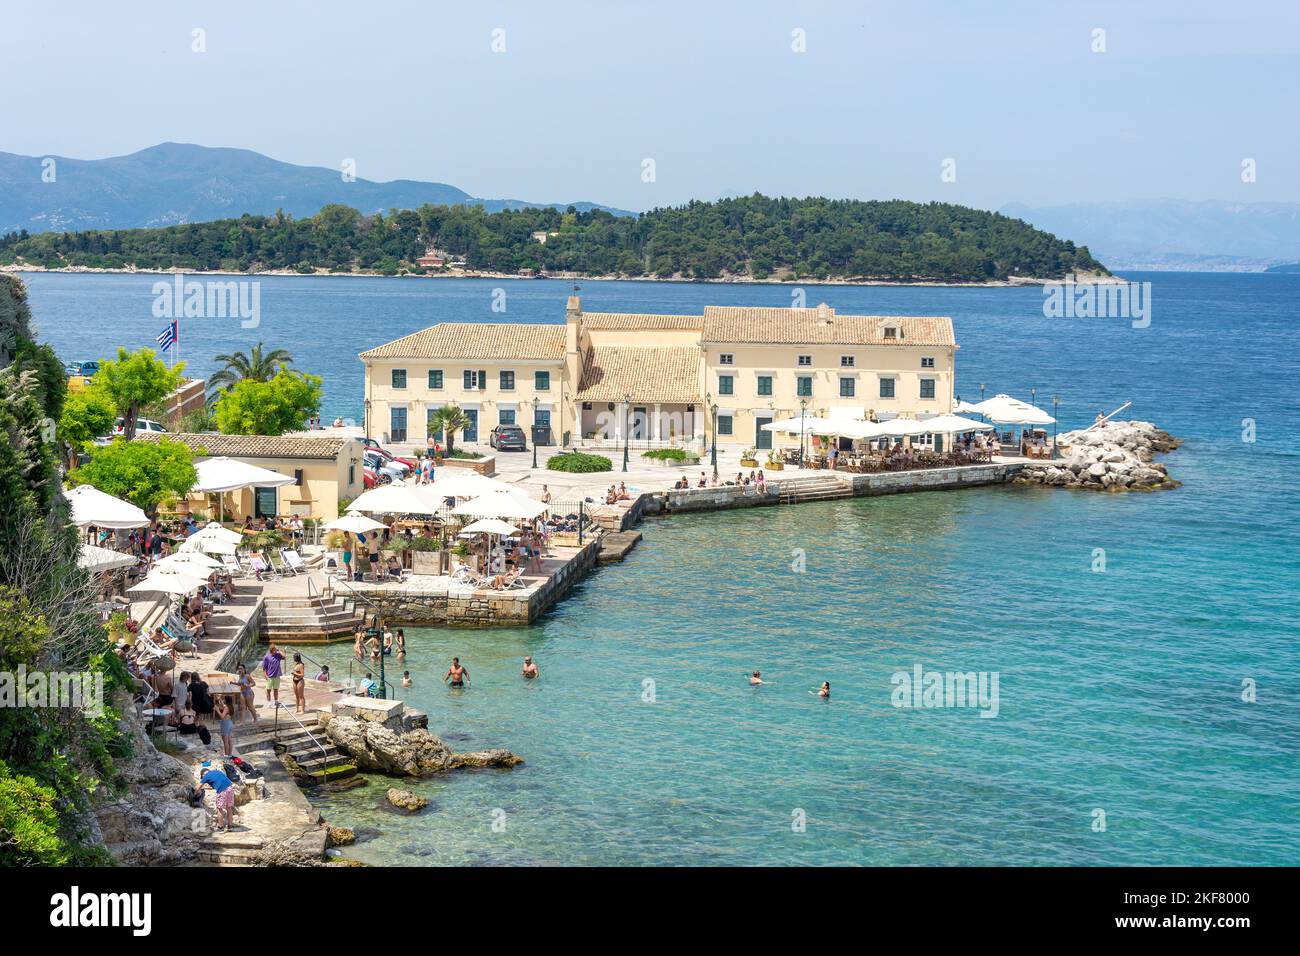 Spiaggia balneare e ristoranti, Faliraki, Corfù centro storico, Corfù (Kerkyra), Isole IONIE, Grecia Foto Stock